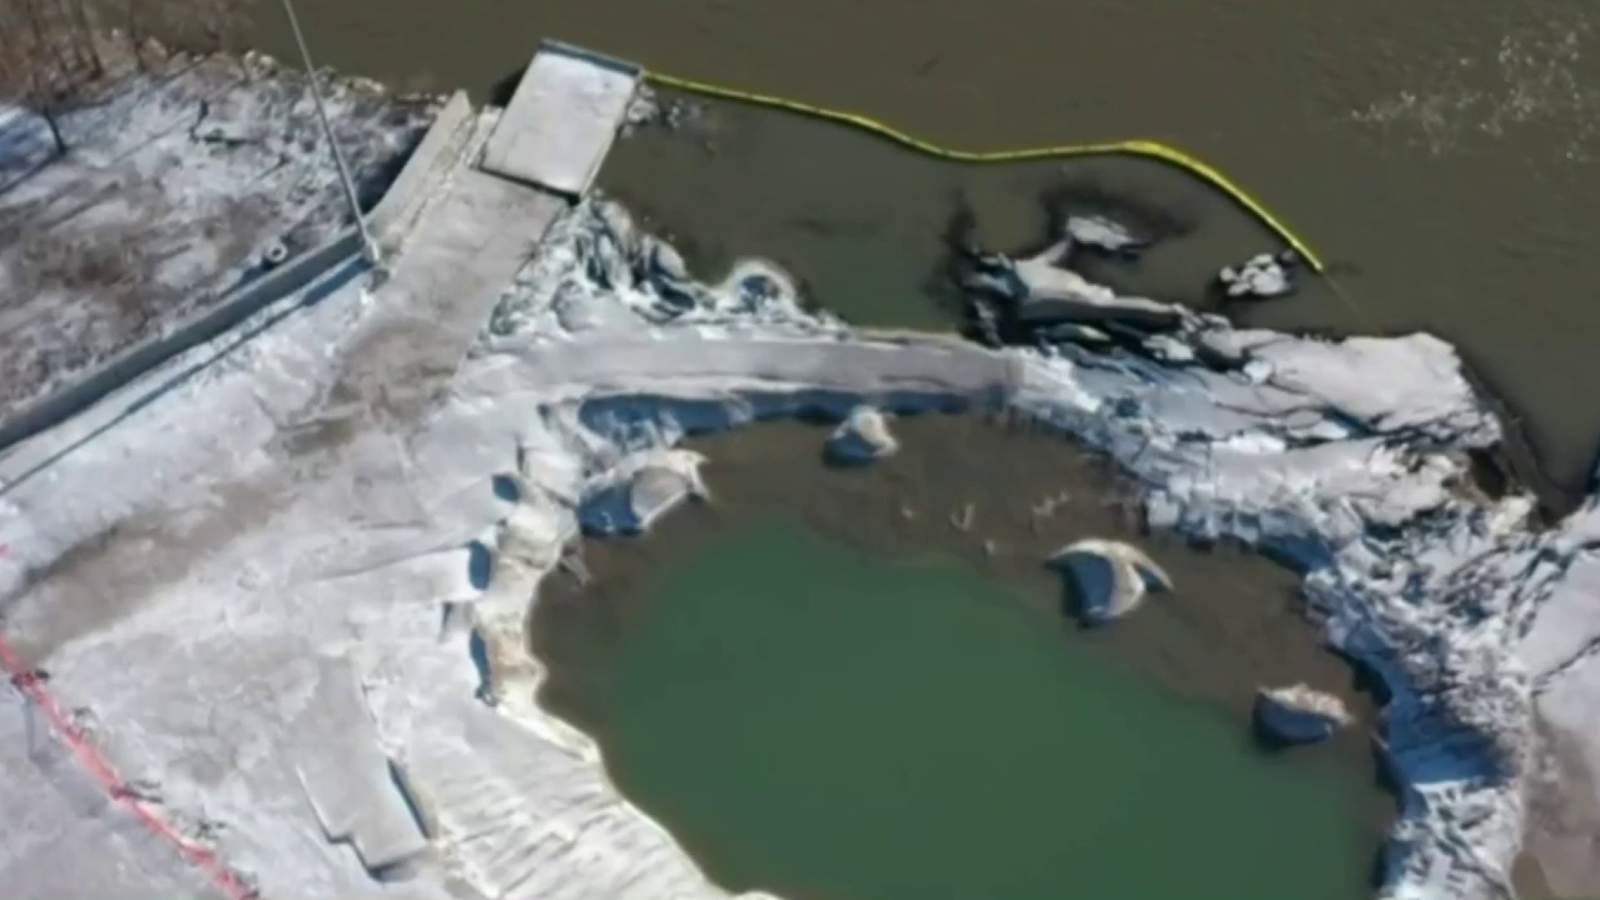 Detroit Bulk Storage river spill: Officials deem containment plans not